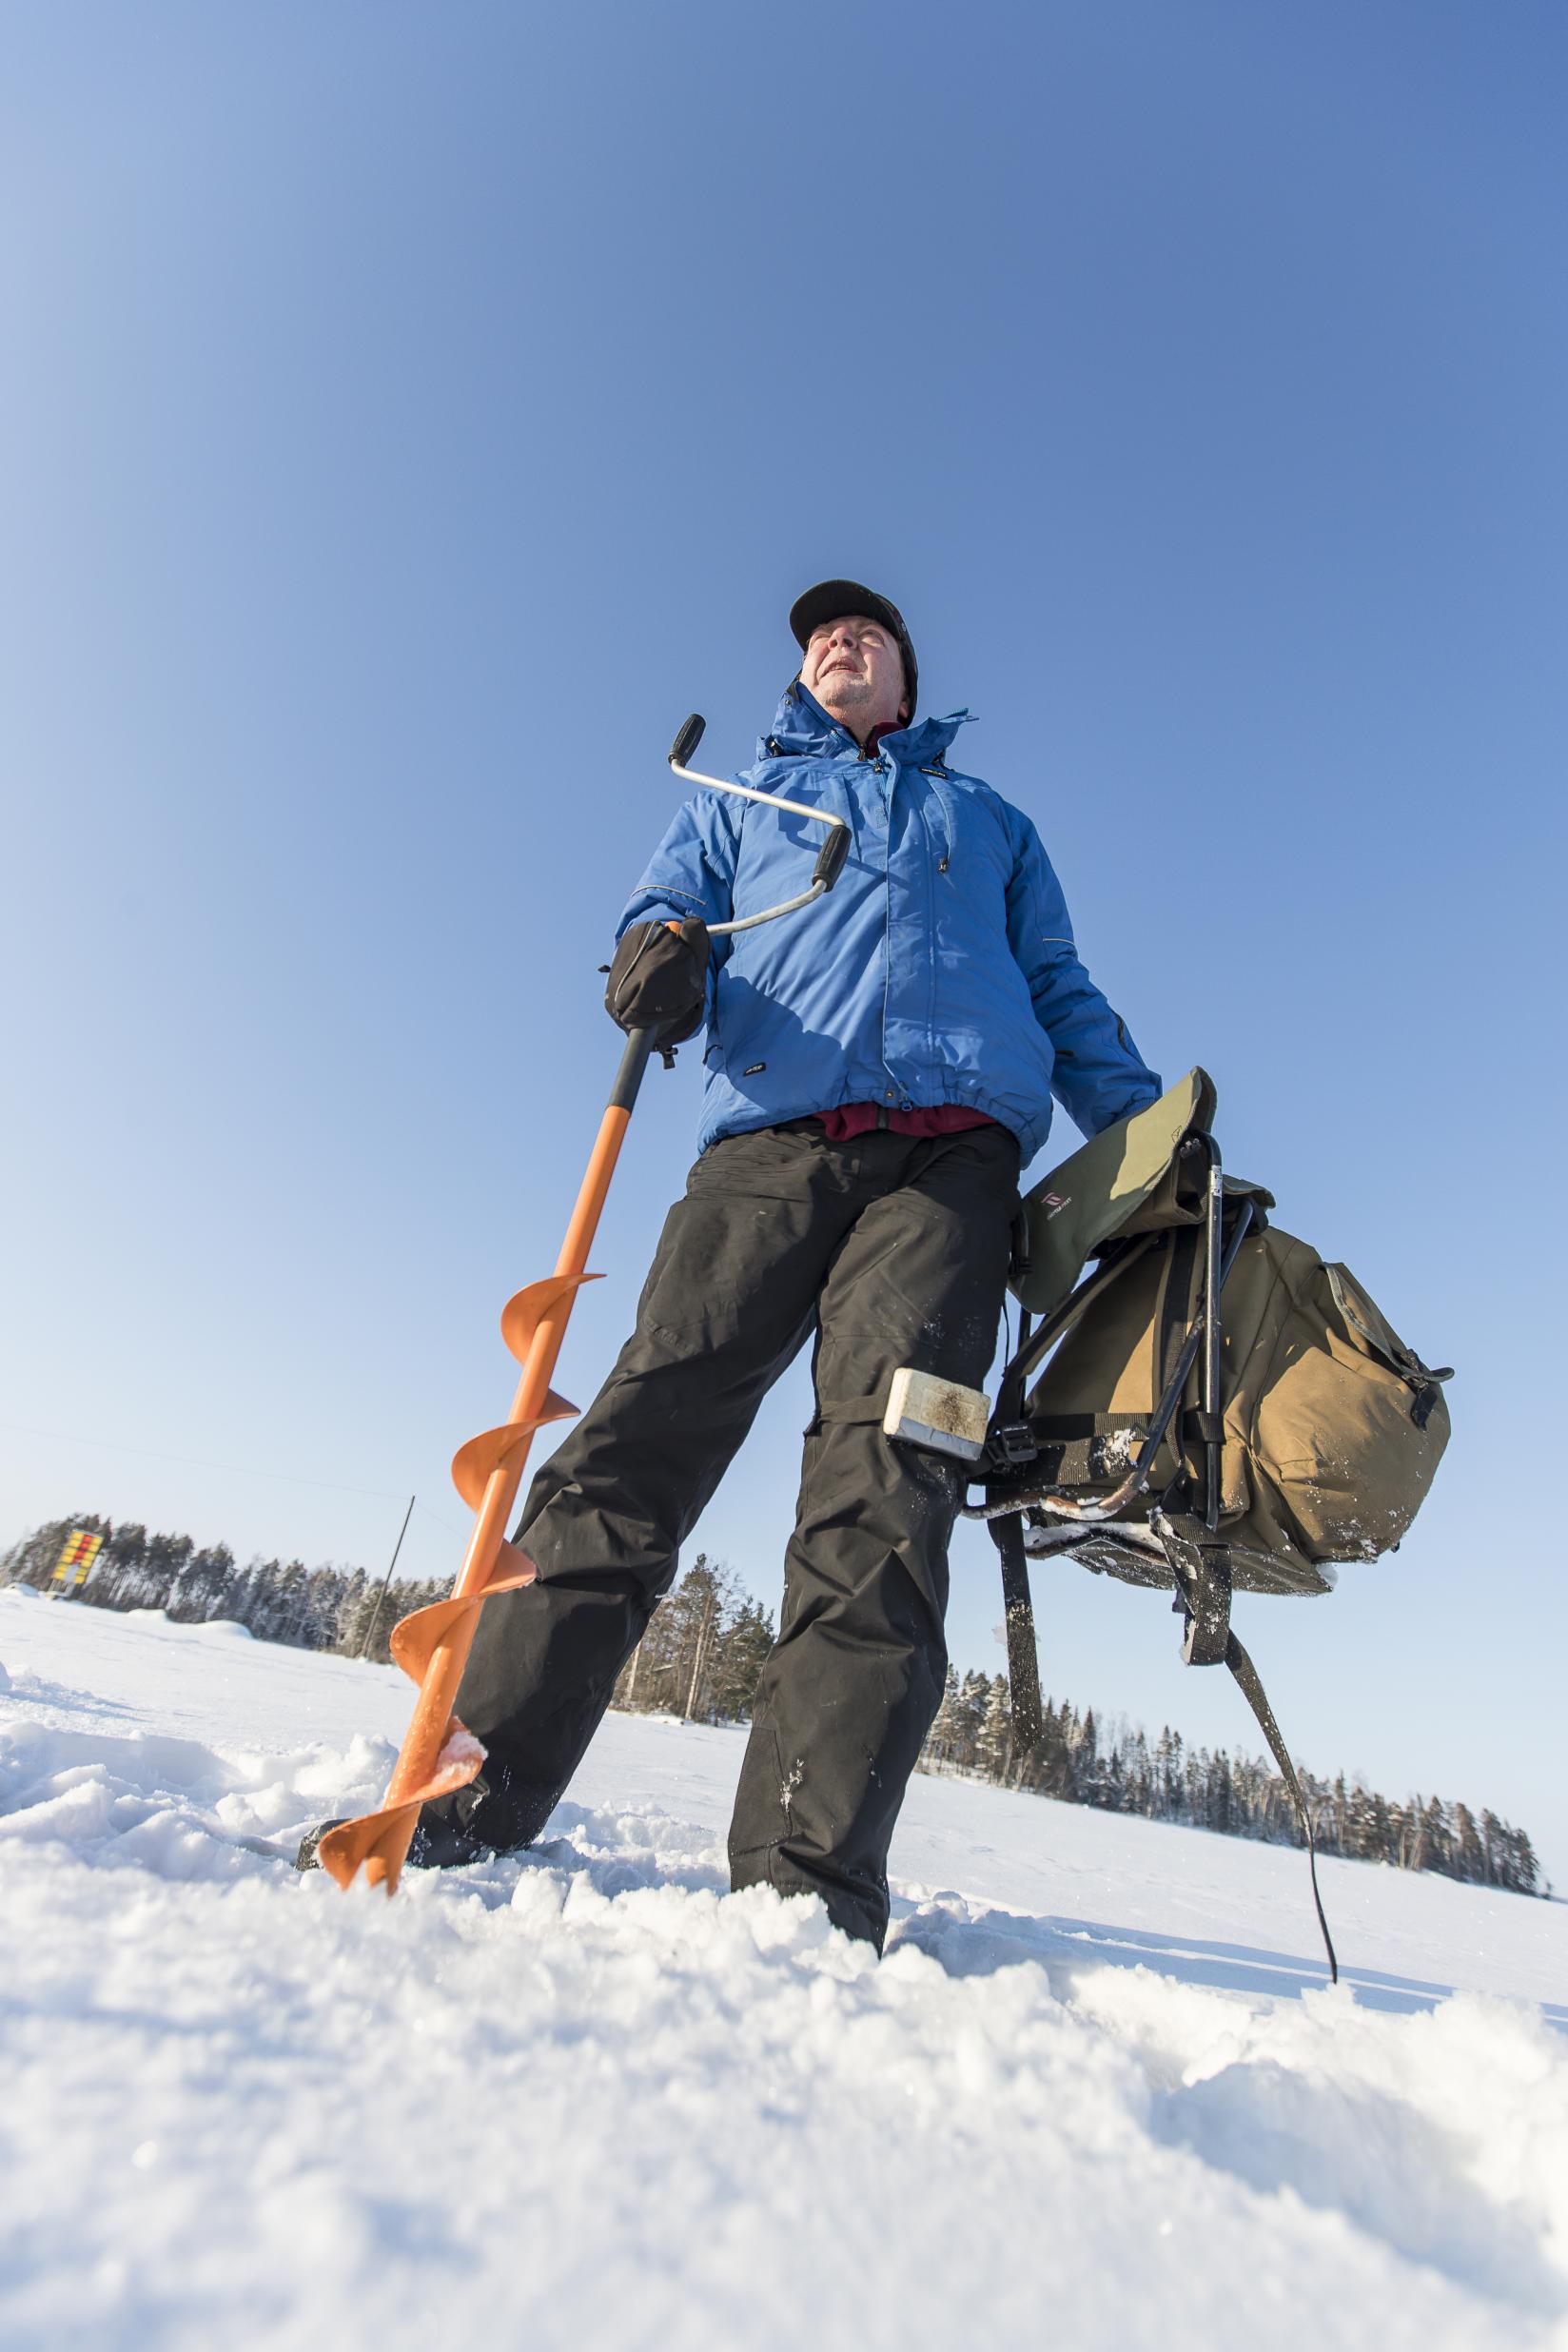 Läskipyörillä pääsee hyvin lumessakin. Reijo Hätinen stressaantuu helposti, ja luonnossa liikkuminen on hänelle tärkeä rentoutumiskeino.
Kun Enni Pellikka kävelee lumikengillä, koirat juoksevat vapaana. 
Työssäjaksaminen huolettaa Pekka Simolaa. Luonnon rauha lisää hänen hyvinvointiaan.